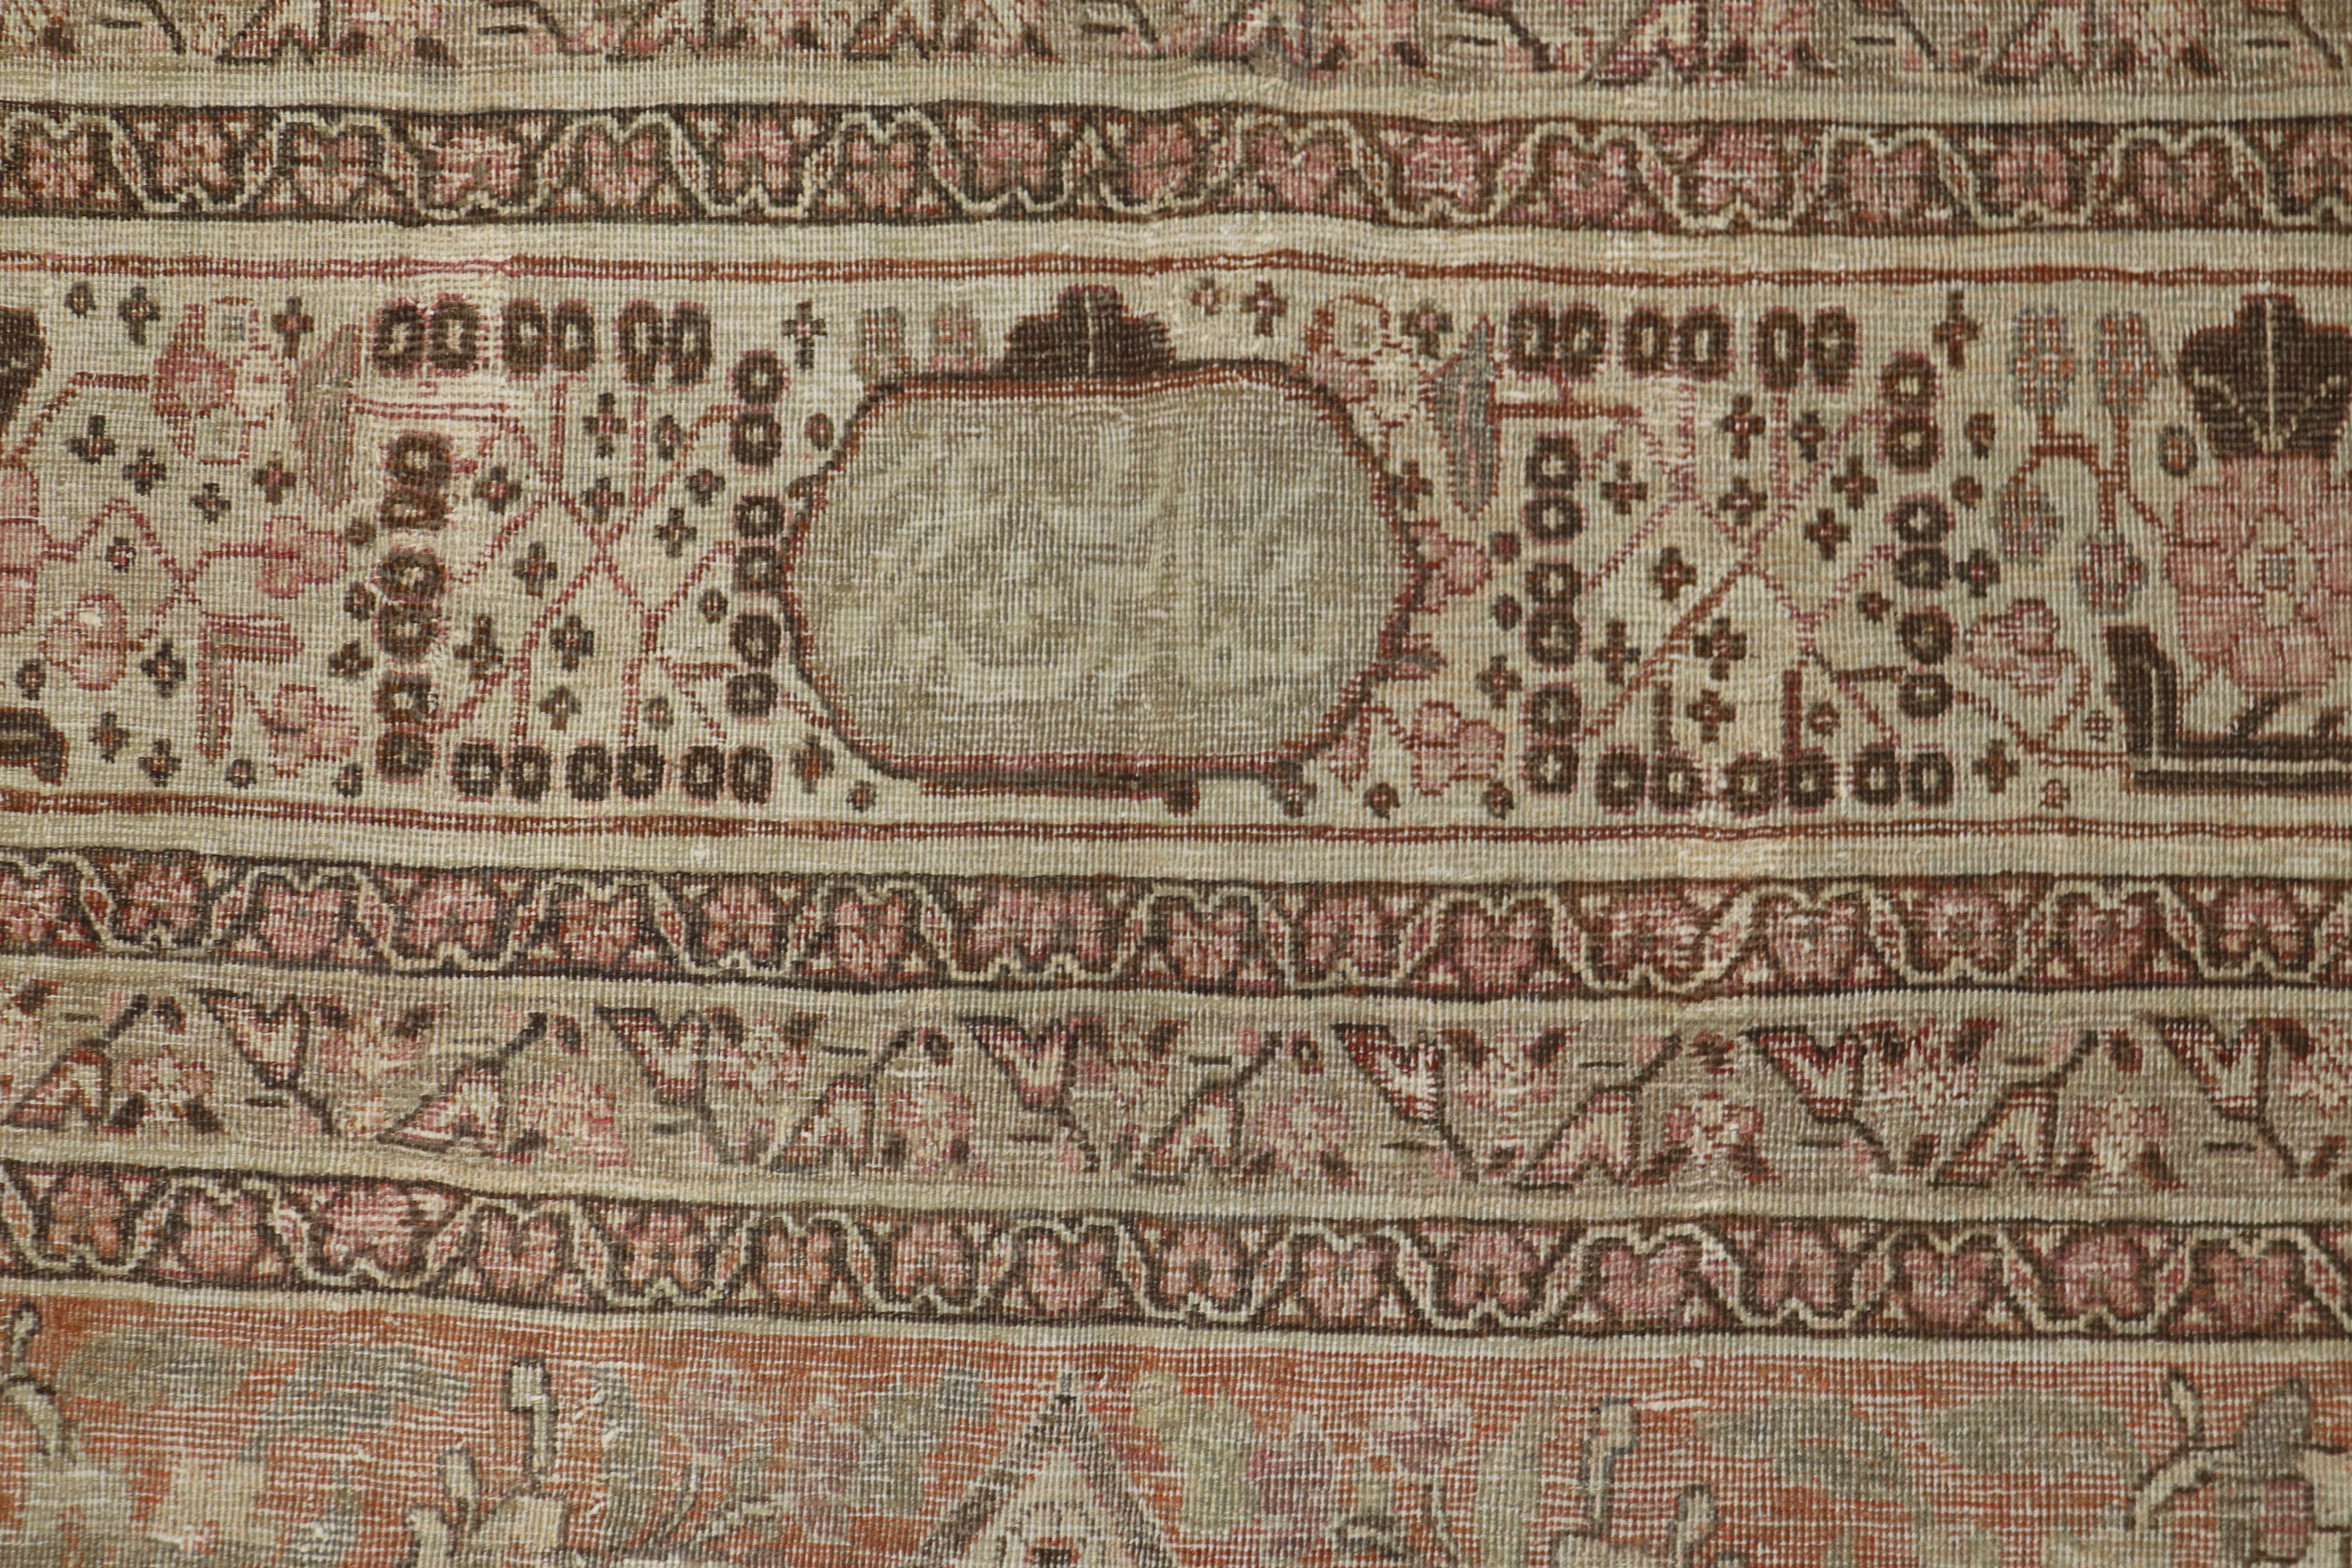 Observational Antique Persian Tabriz Room Size Rug For Sale 8